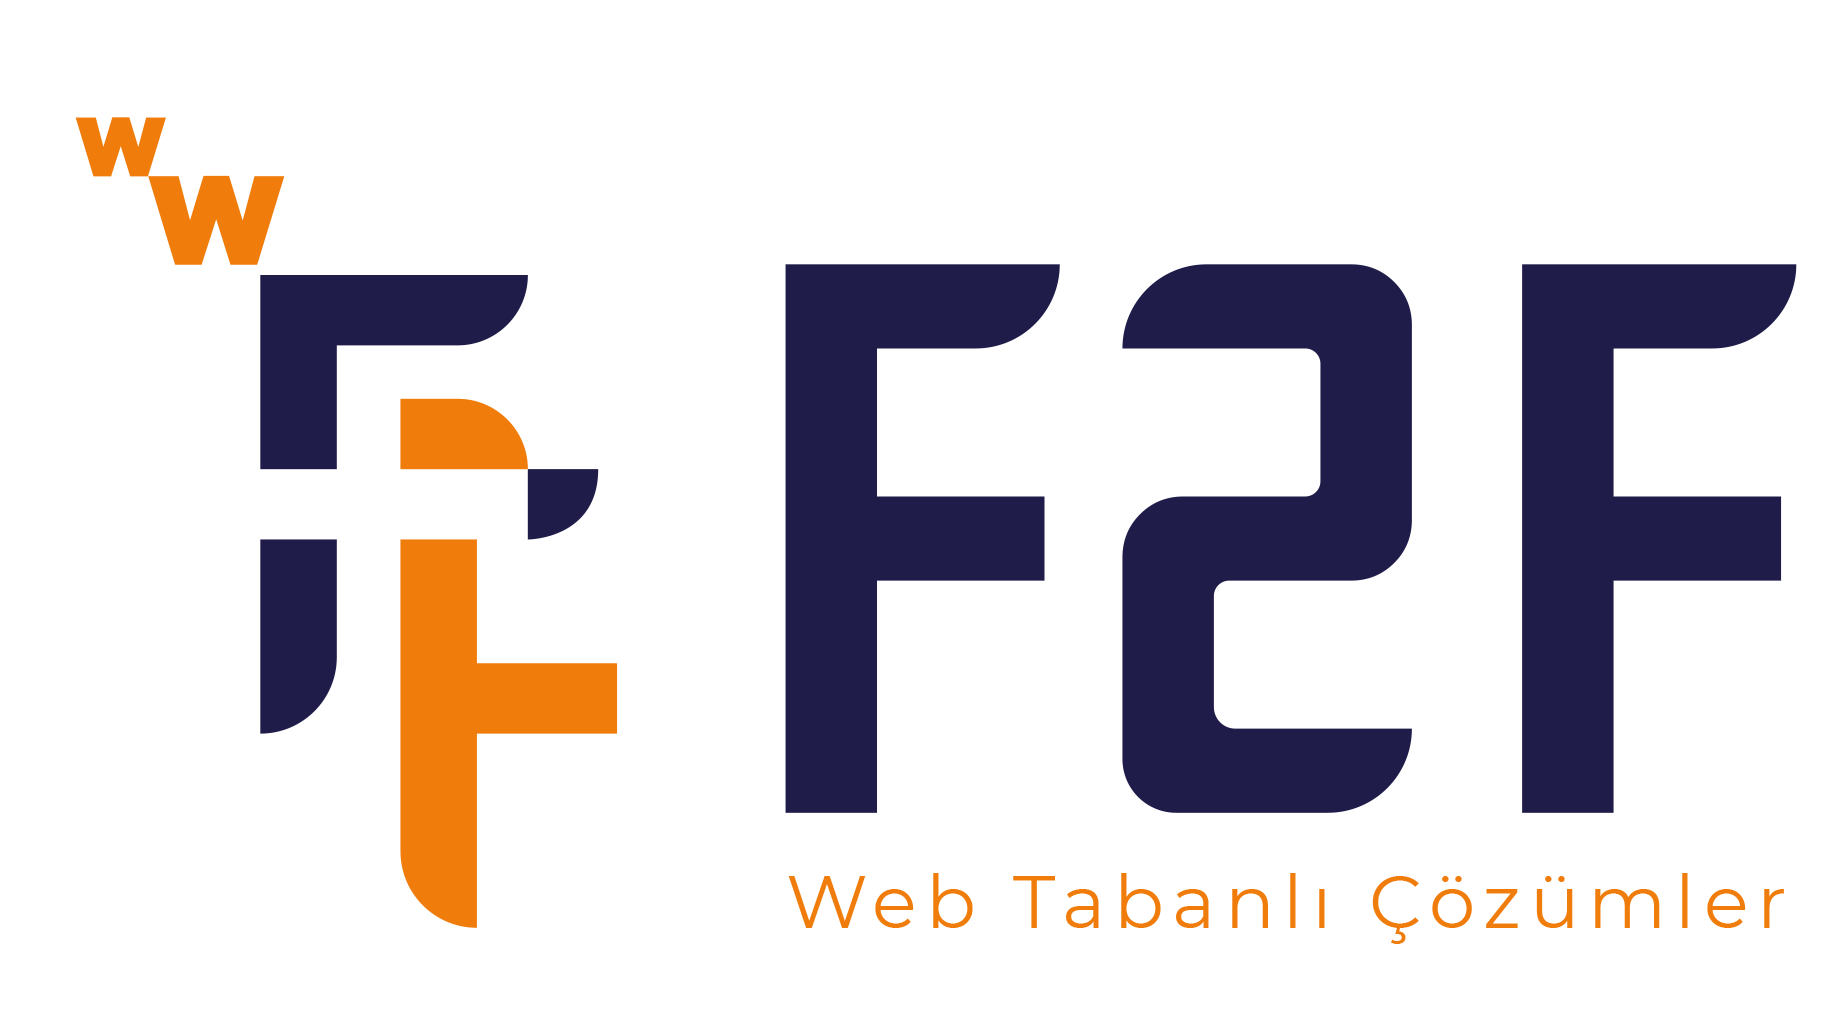 F2F Bilişim Web Tasarım Çözümleri